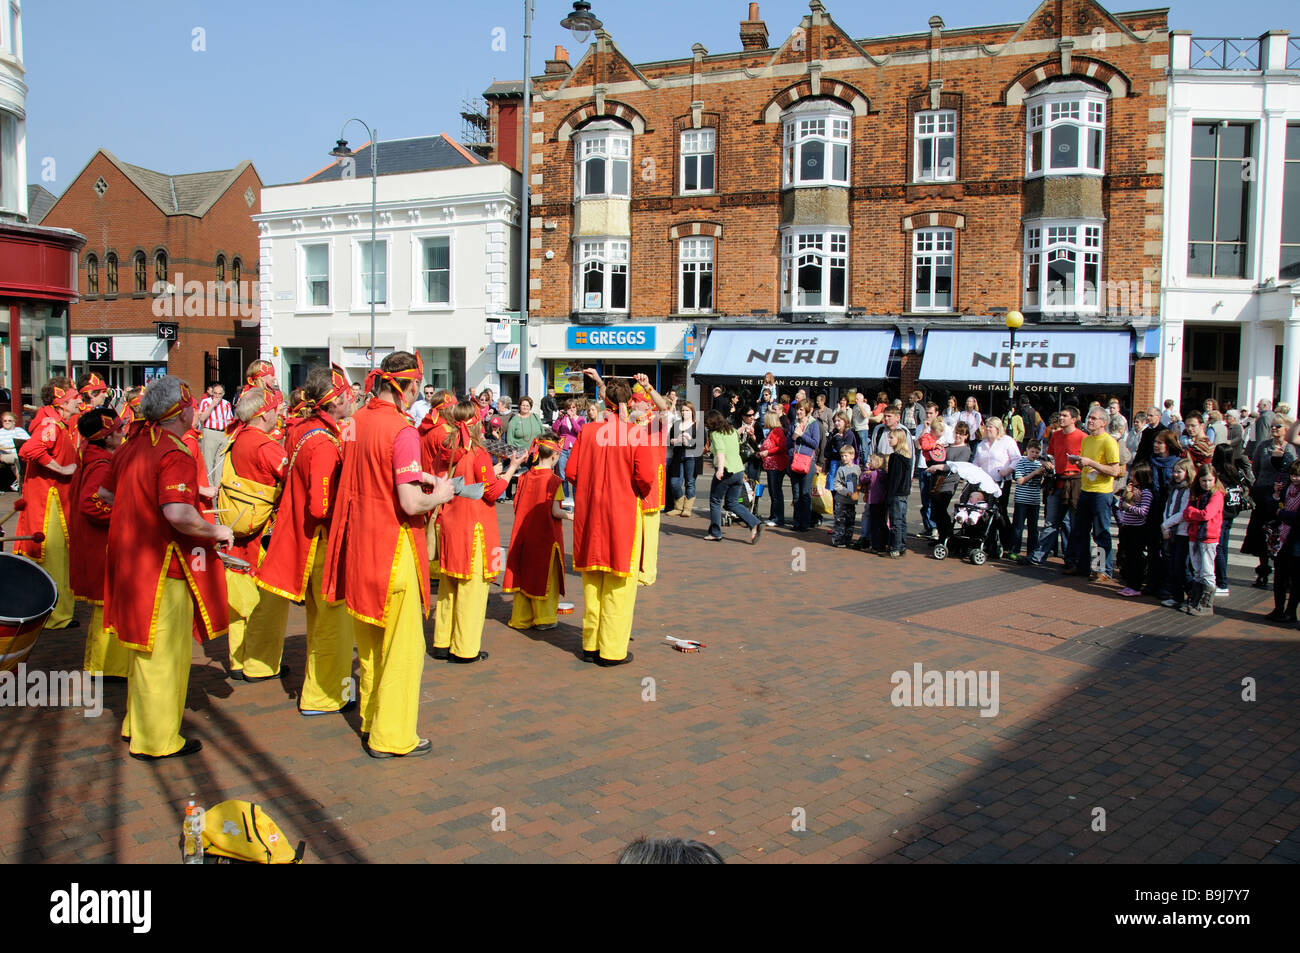 Blocofogo band de divertir les passants dans le centre-ville de Royal Tunbridge Wells Kent England UK Banque D'Images